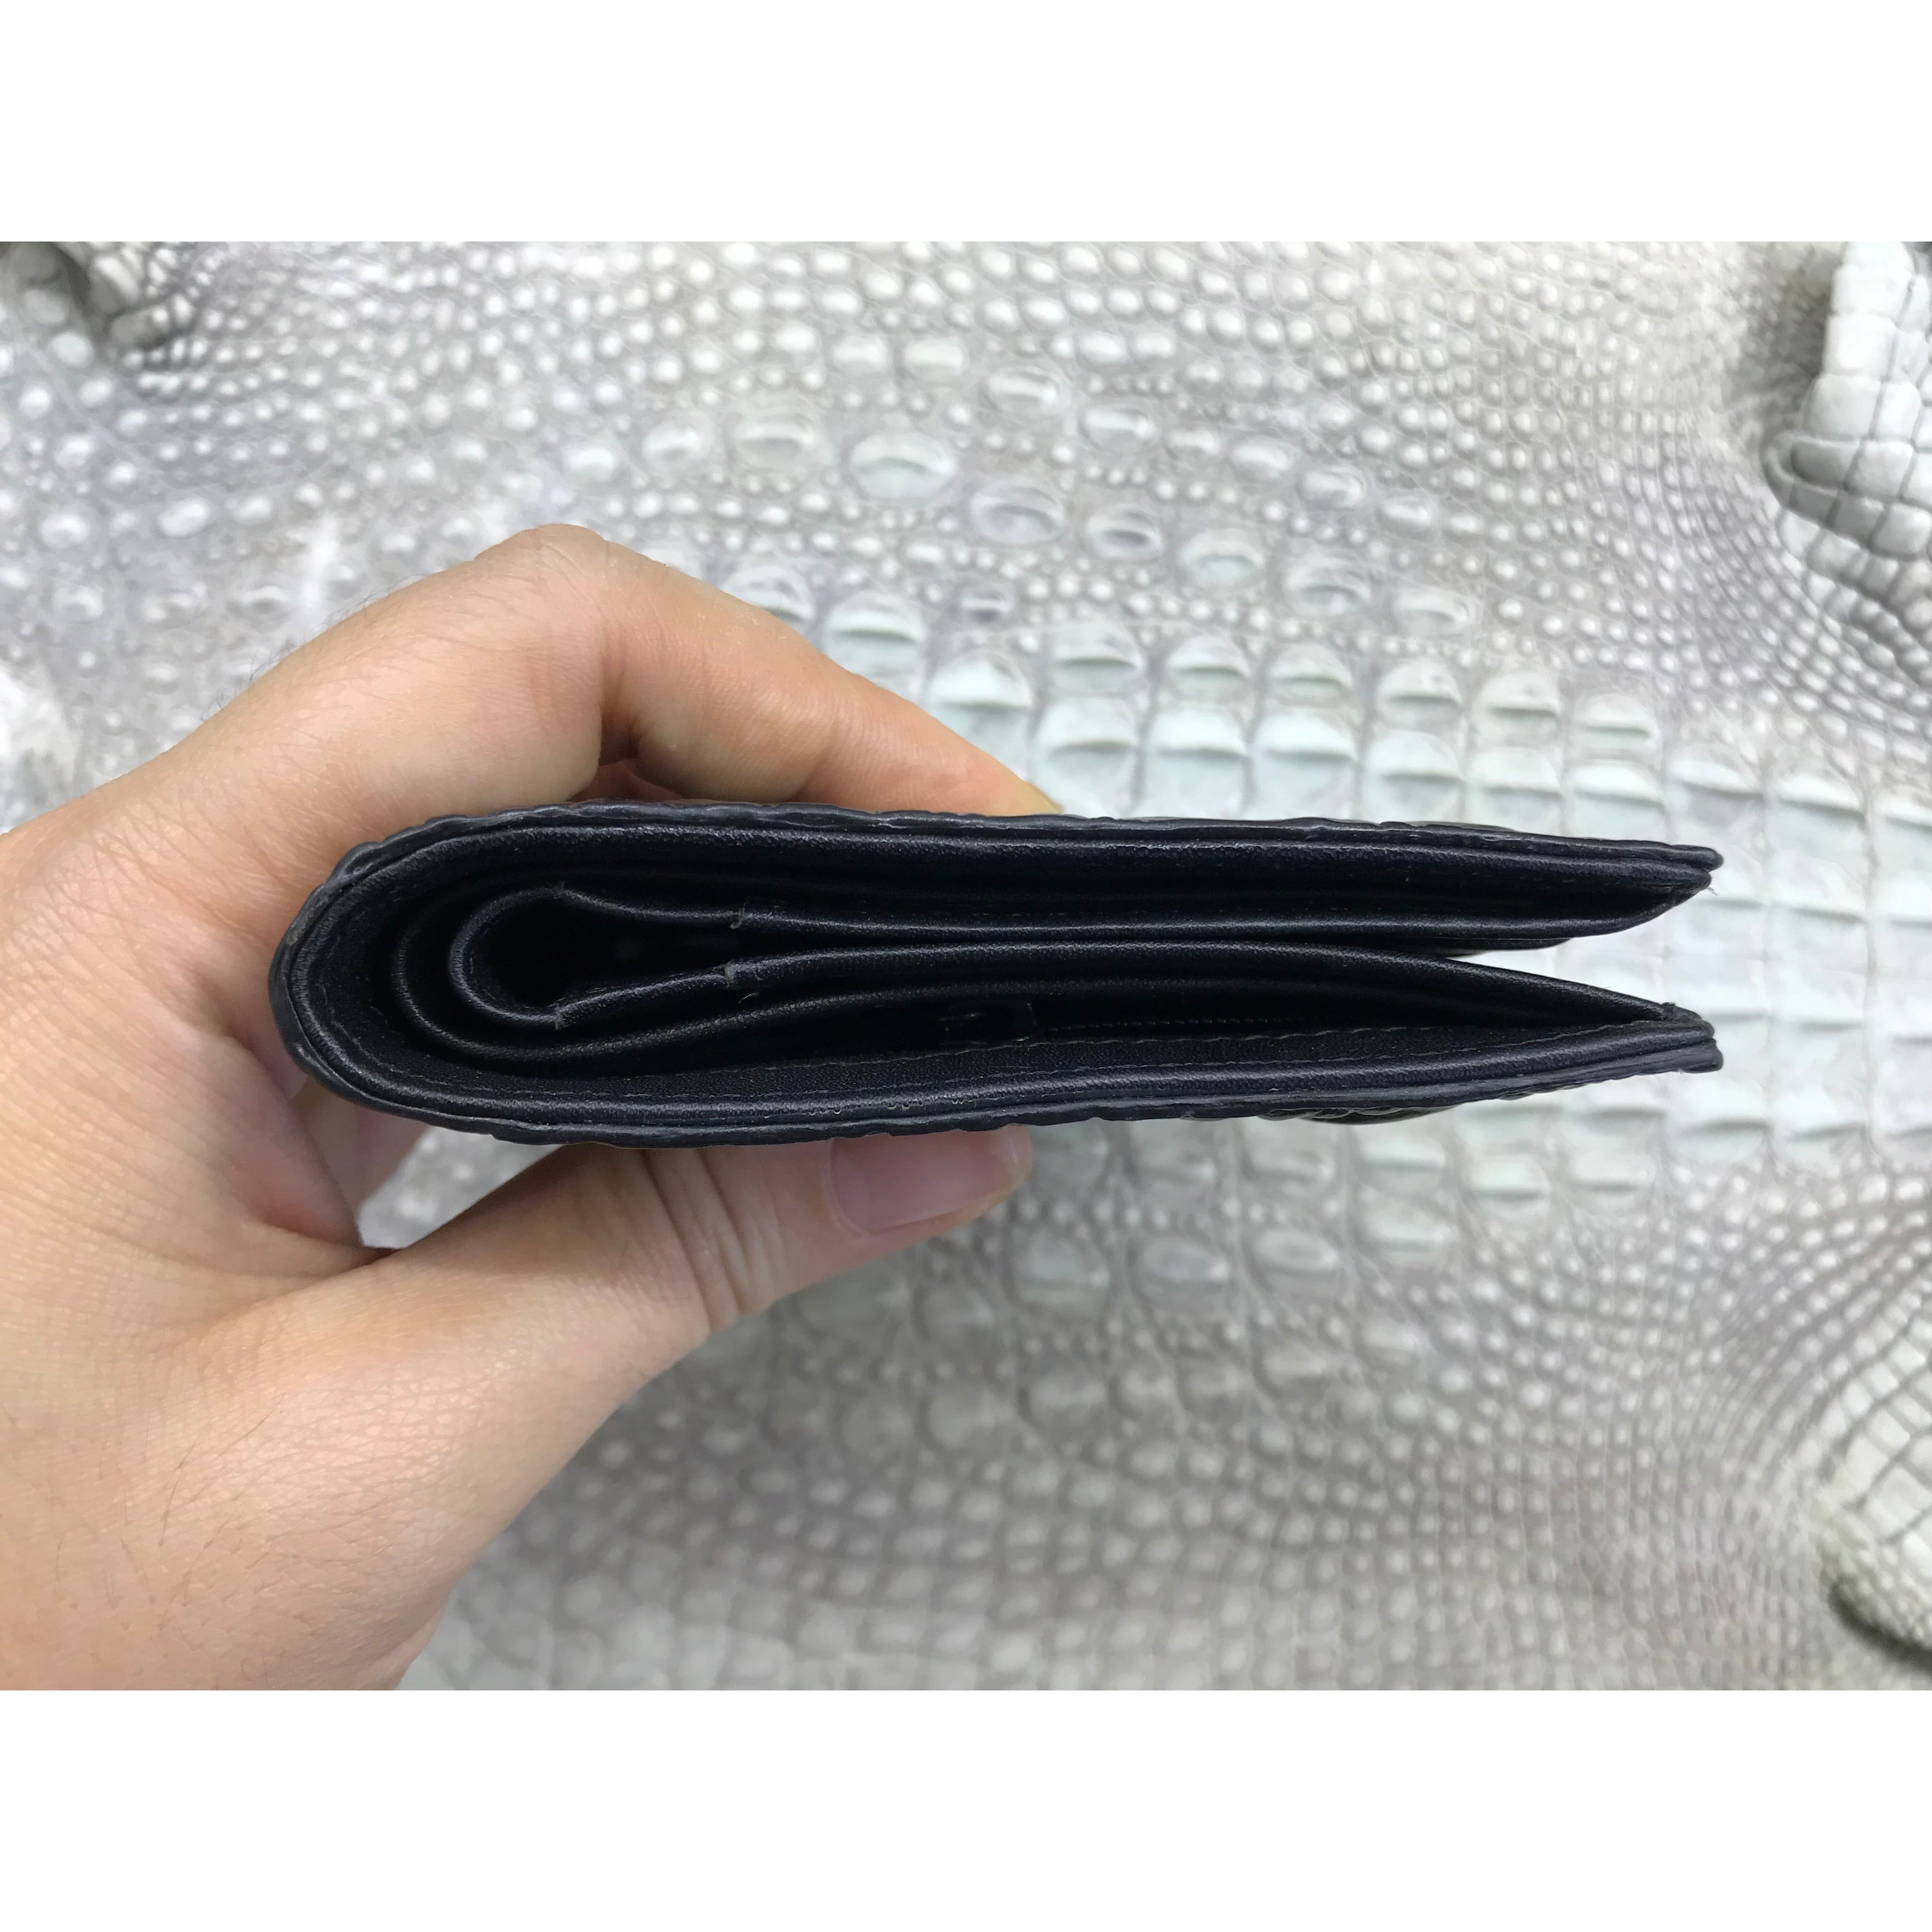 Black Alligator Horn Back Skin Bifold Vertical Wallet For Men | Handmade Crocodile Leather Wallet RFID Blocking | VL5678 - Vinacreations